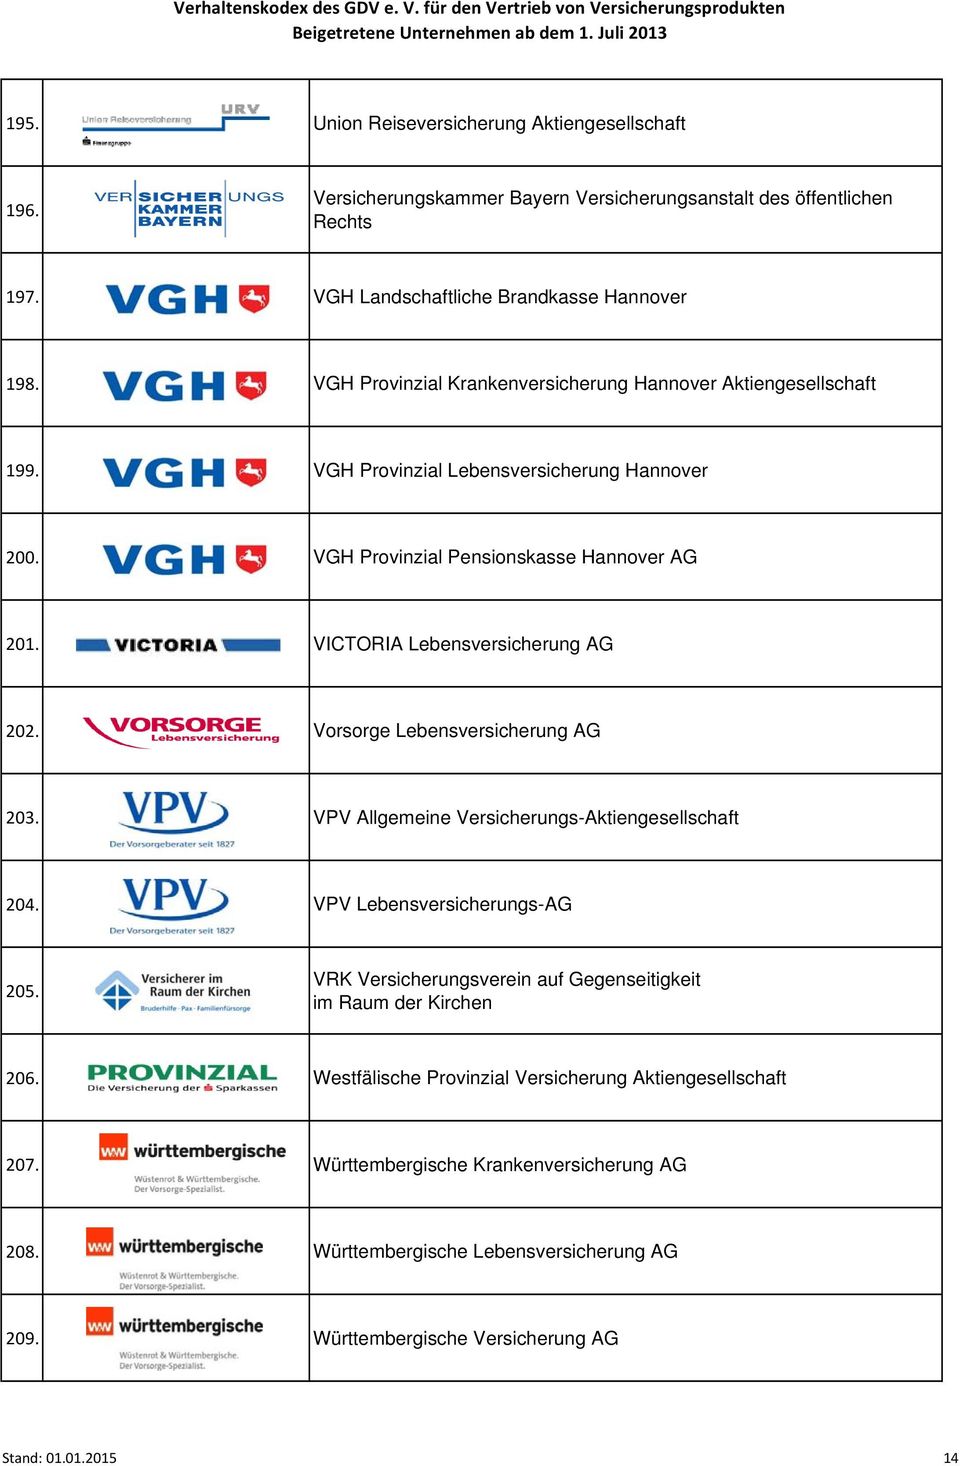 VICTORIA Lebensversicherung AG 202. Vorsorge Lebensversicherung AG 203. VPV Allgemeine Versicherungs-Aktiengesellschaft 204. VPV Lebensversicherungs-AG 205.